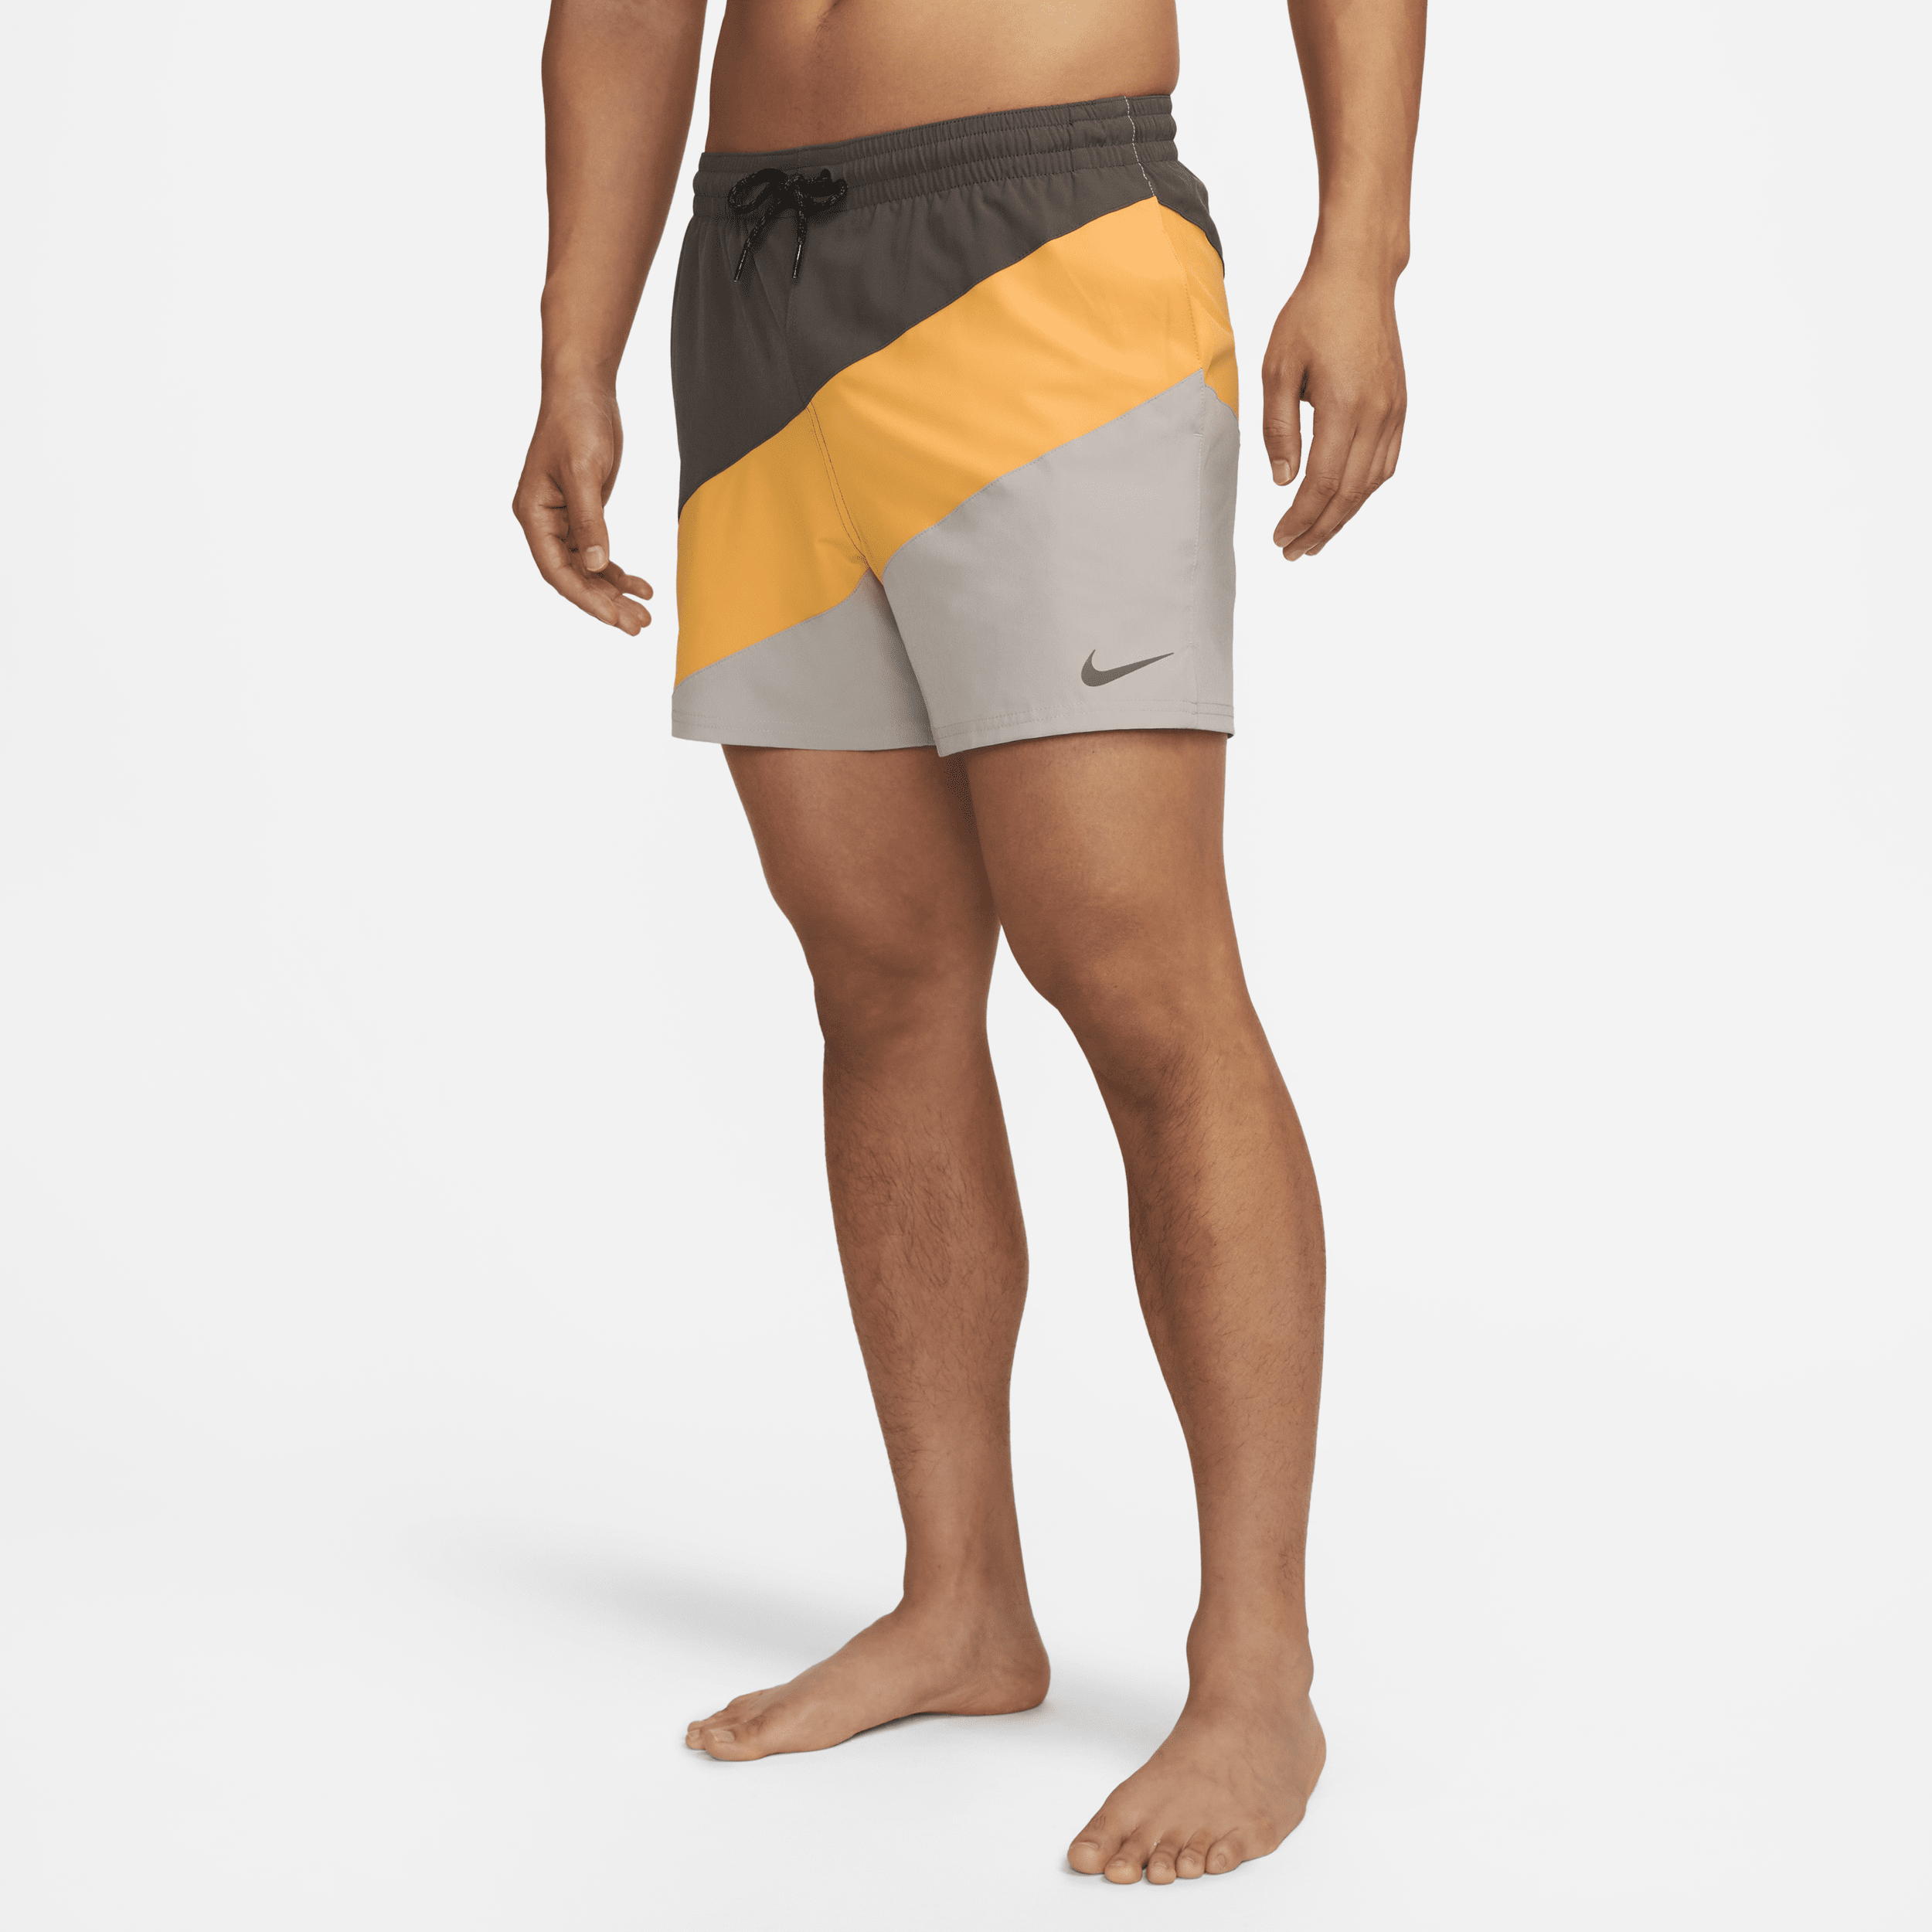 Shorts da mare Volley 13 cm Nike – Uomo - Giallo